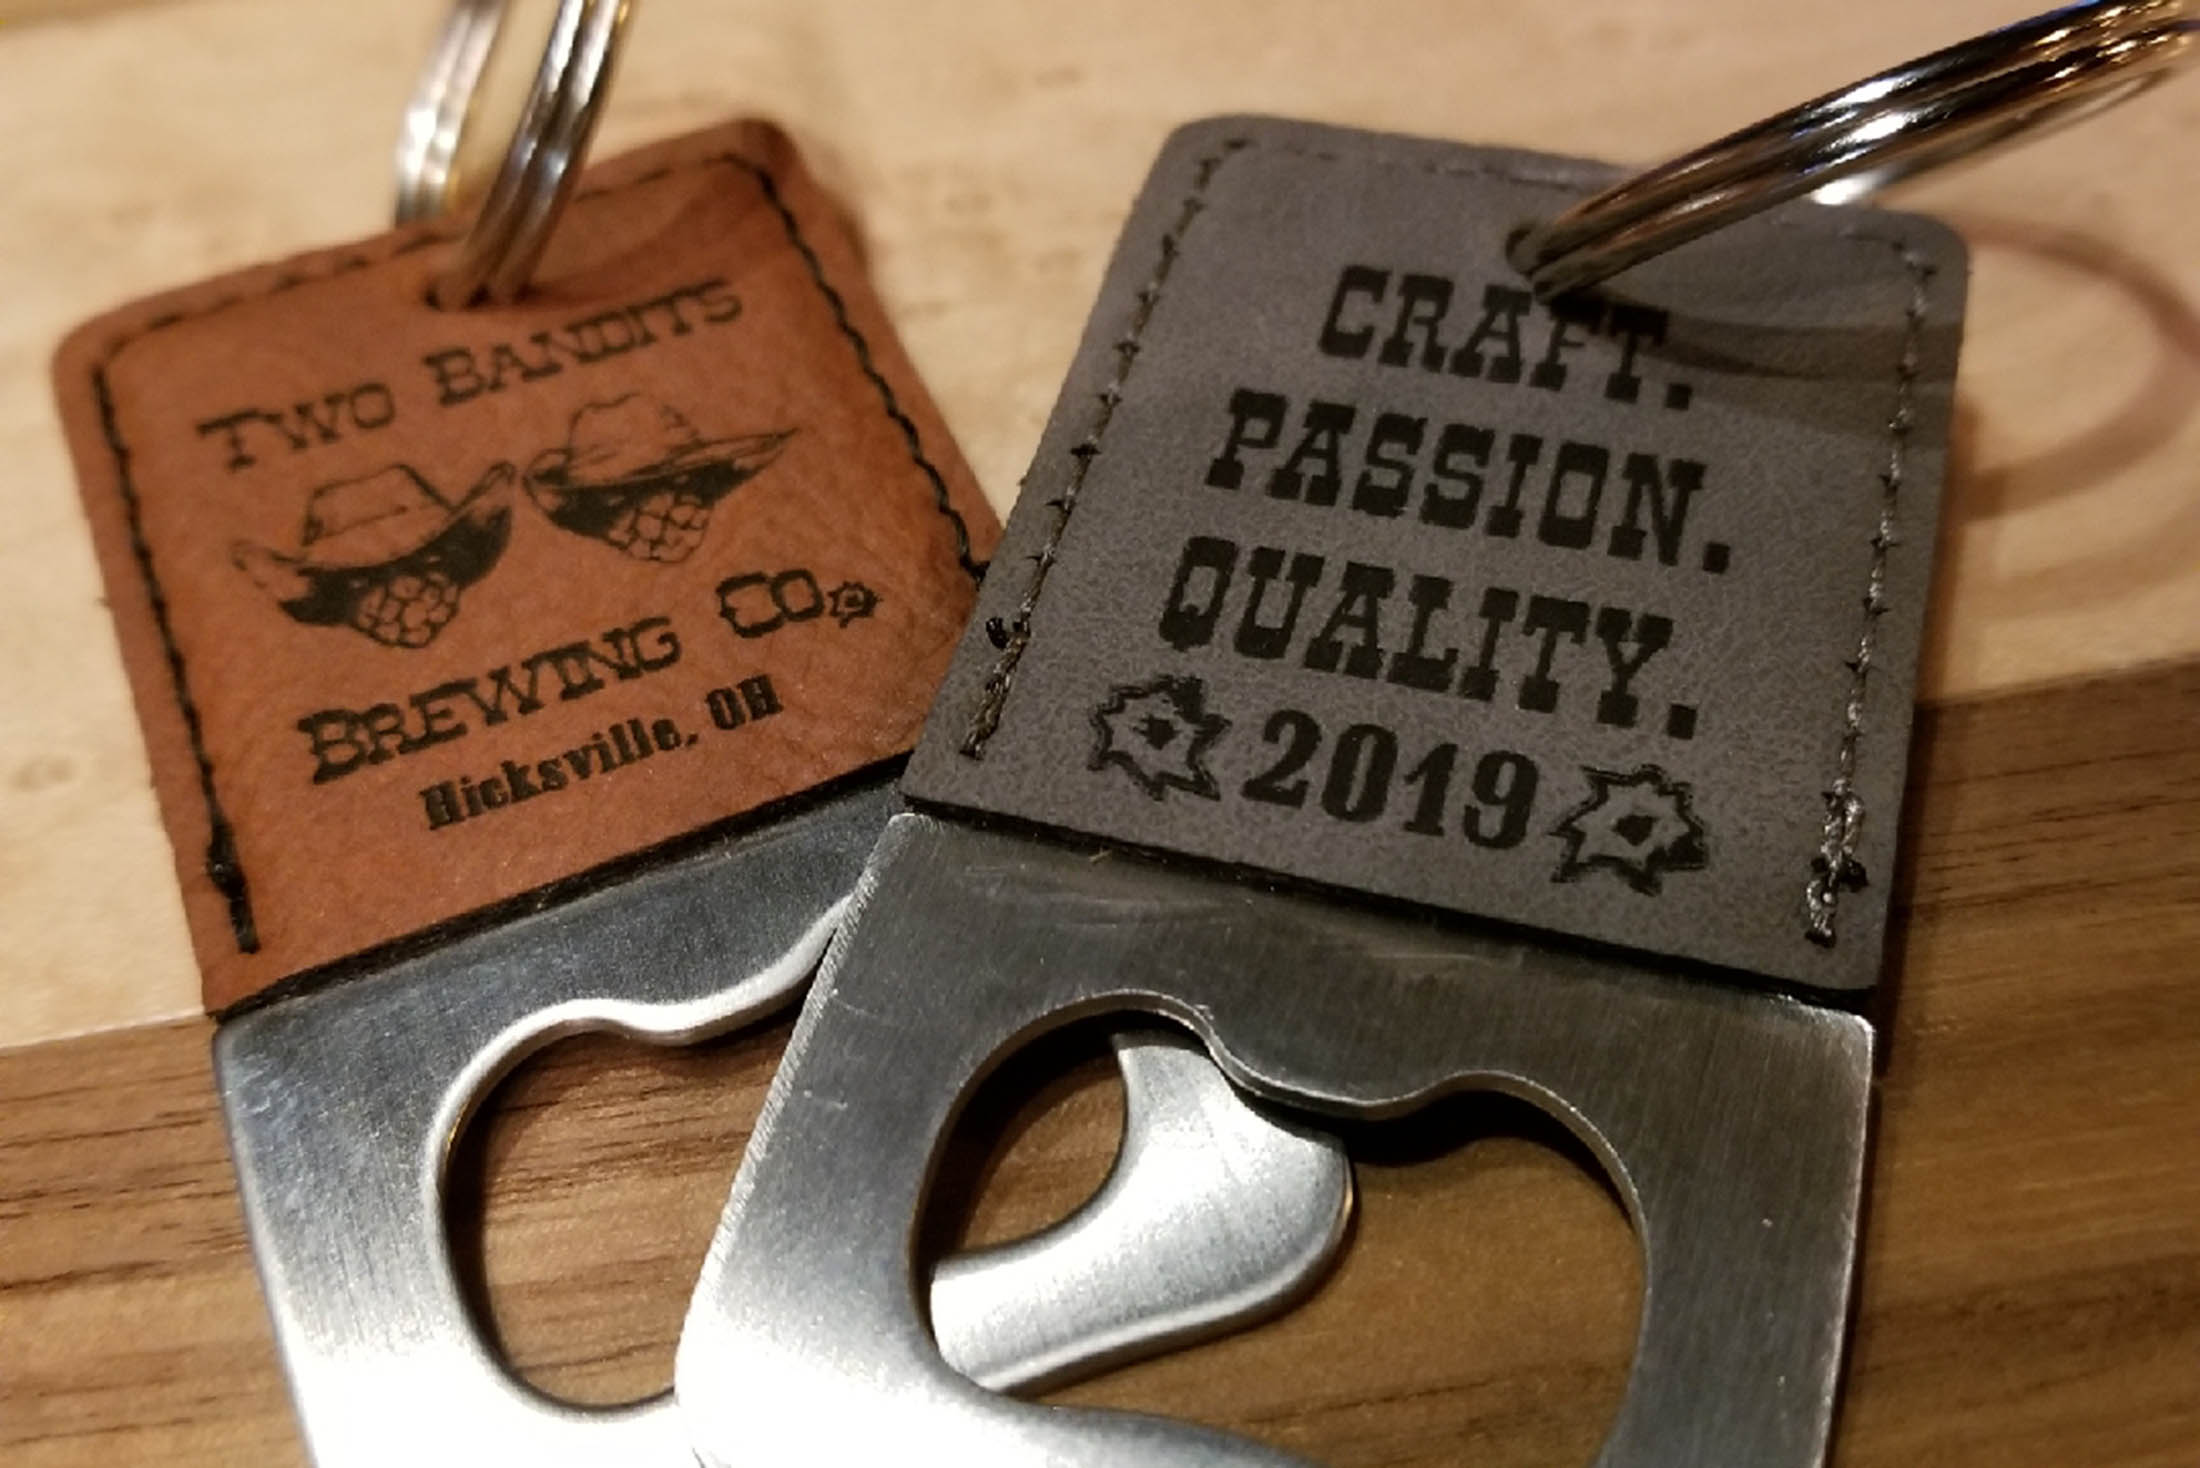 2019 Brew Crew Keychains